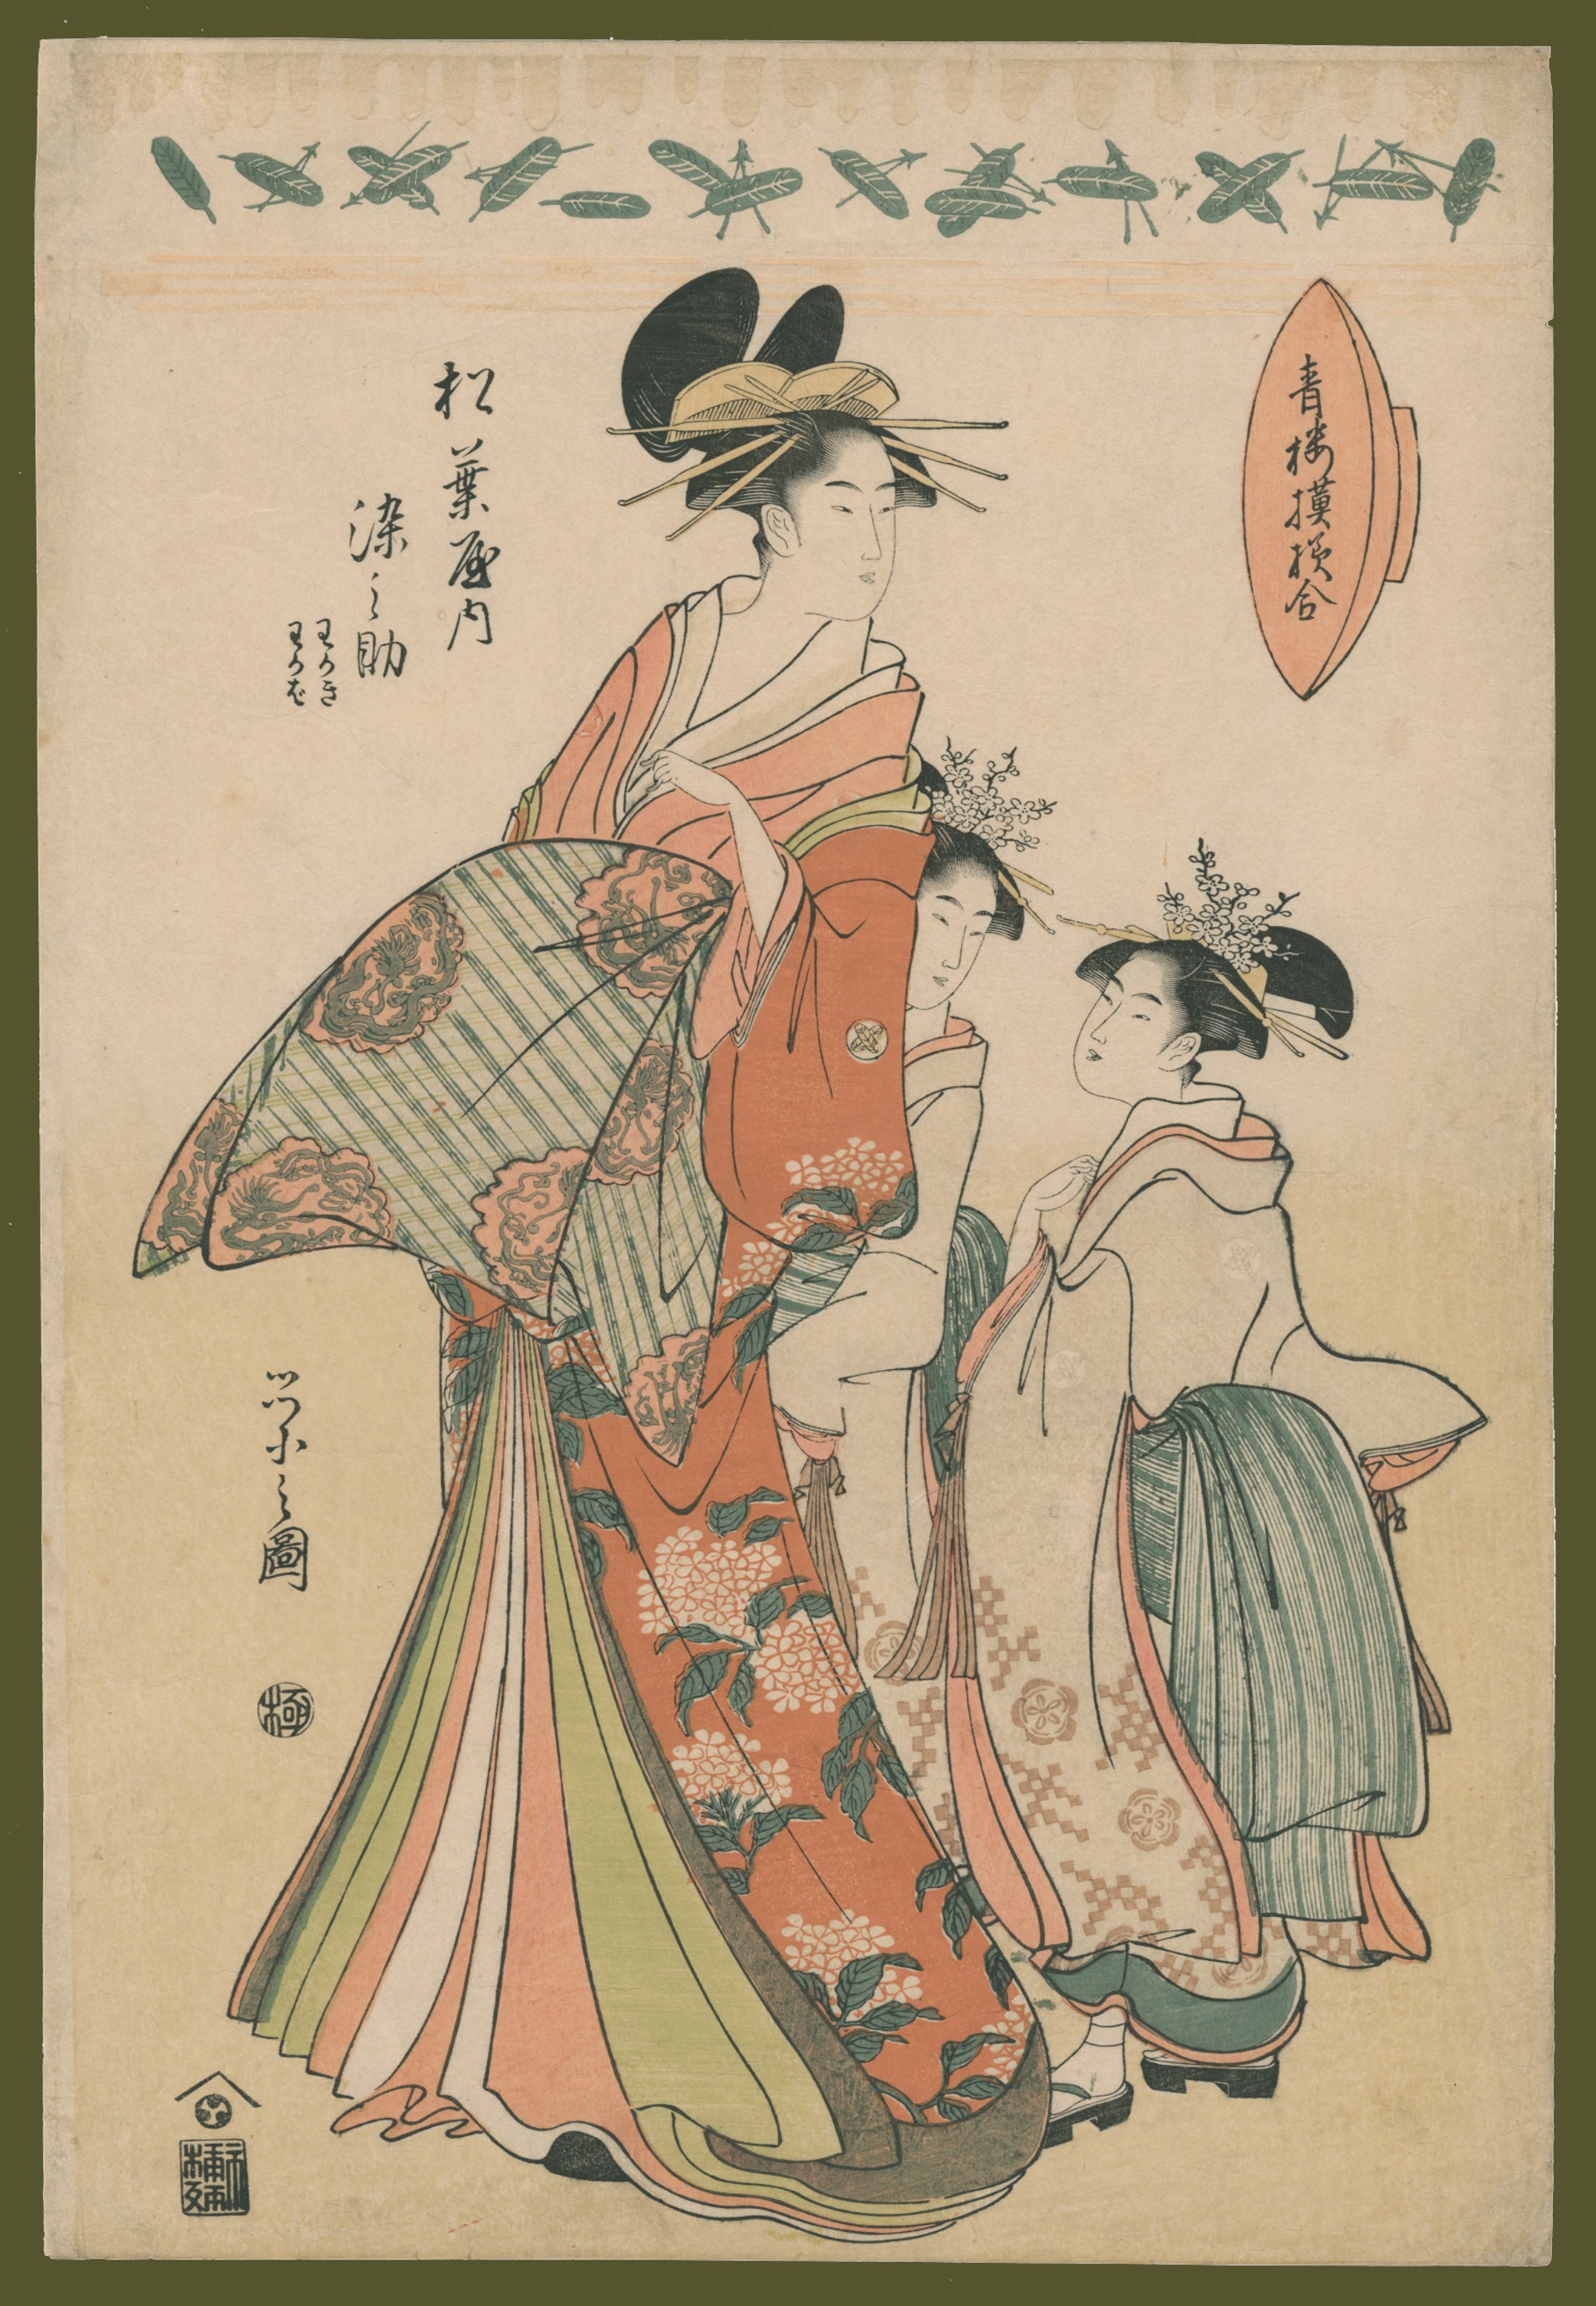 Somenosuke of the Matsuba-ya with her kamuro Wakaki and Wakaba Seiro Moyo Awase (Contest of Designs in the Yoshiwara) by Eishi